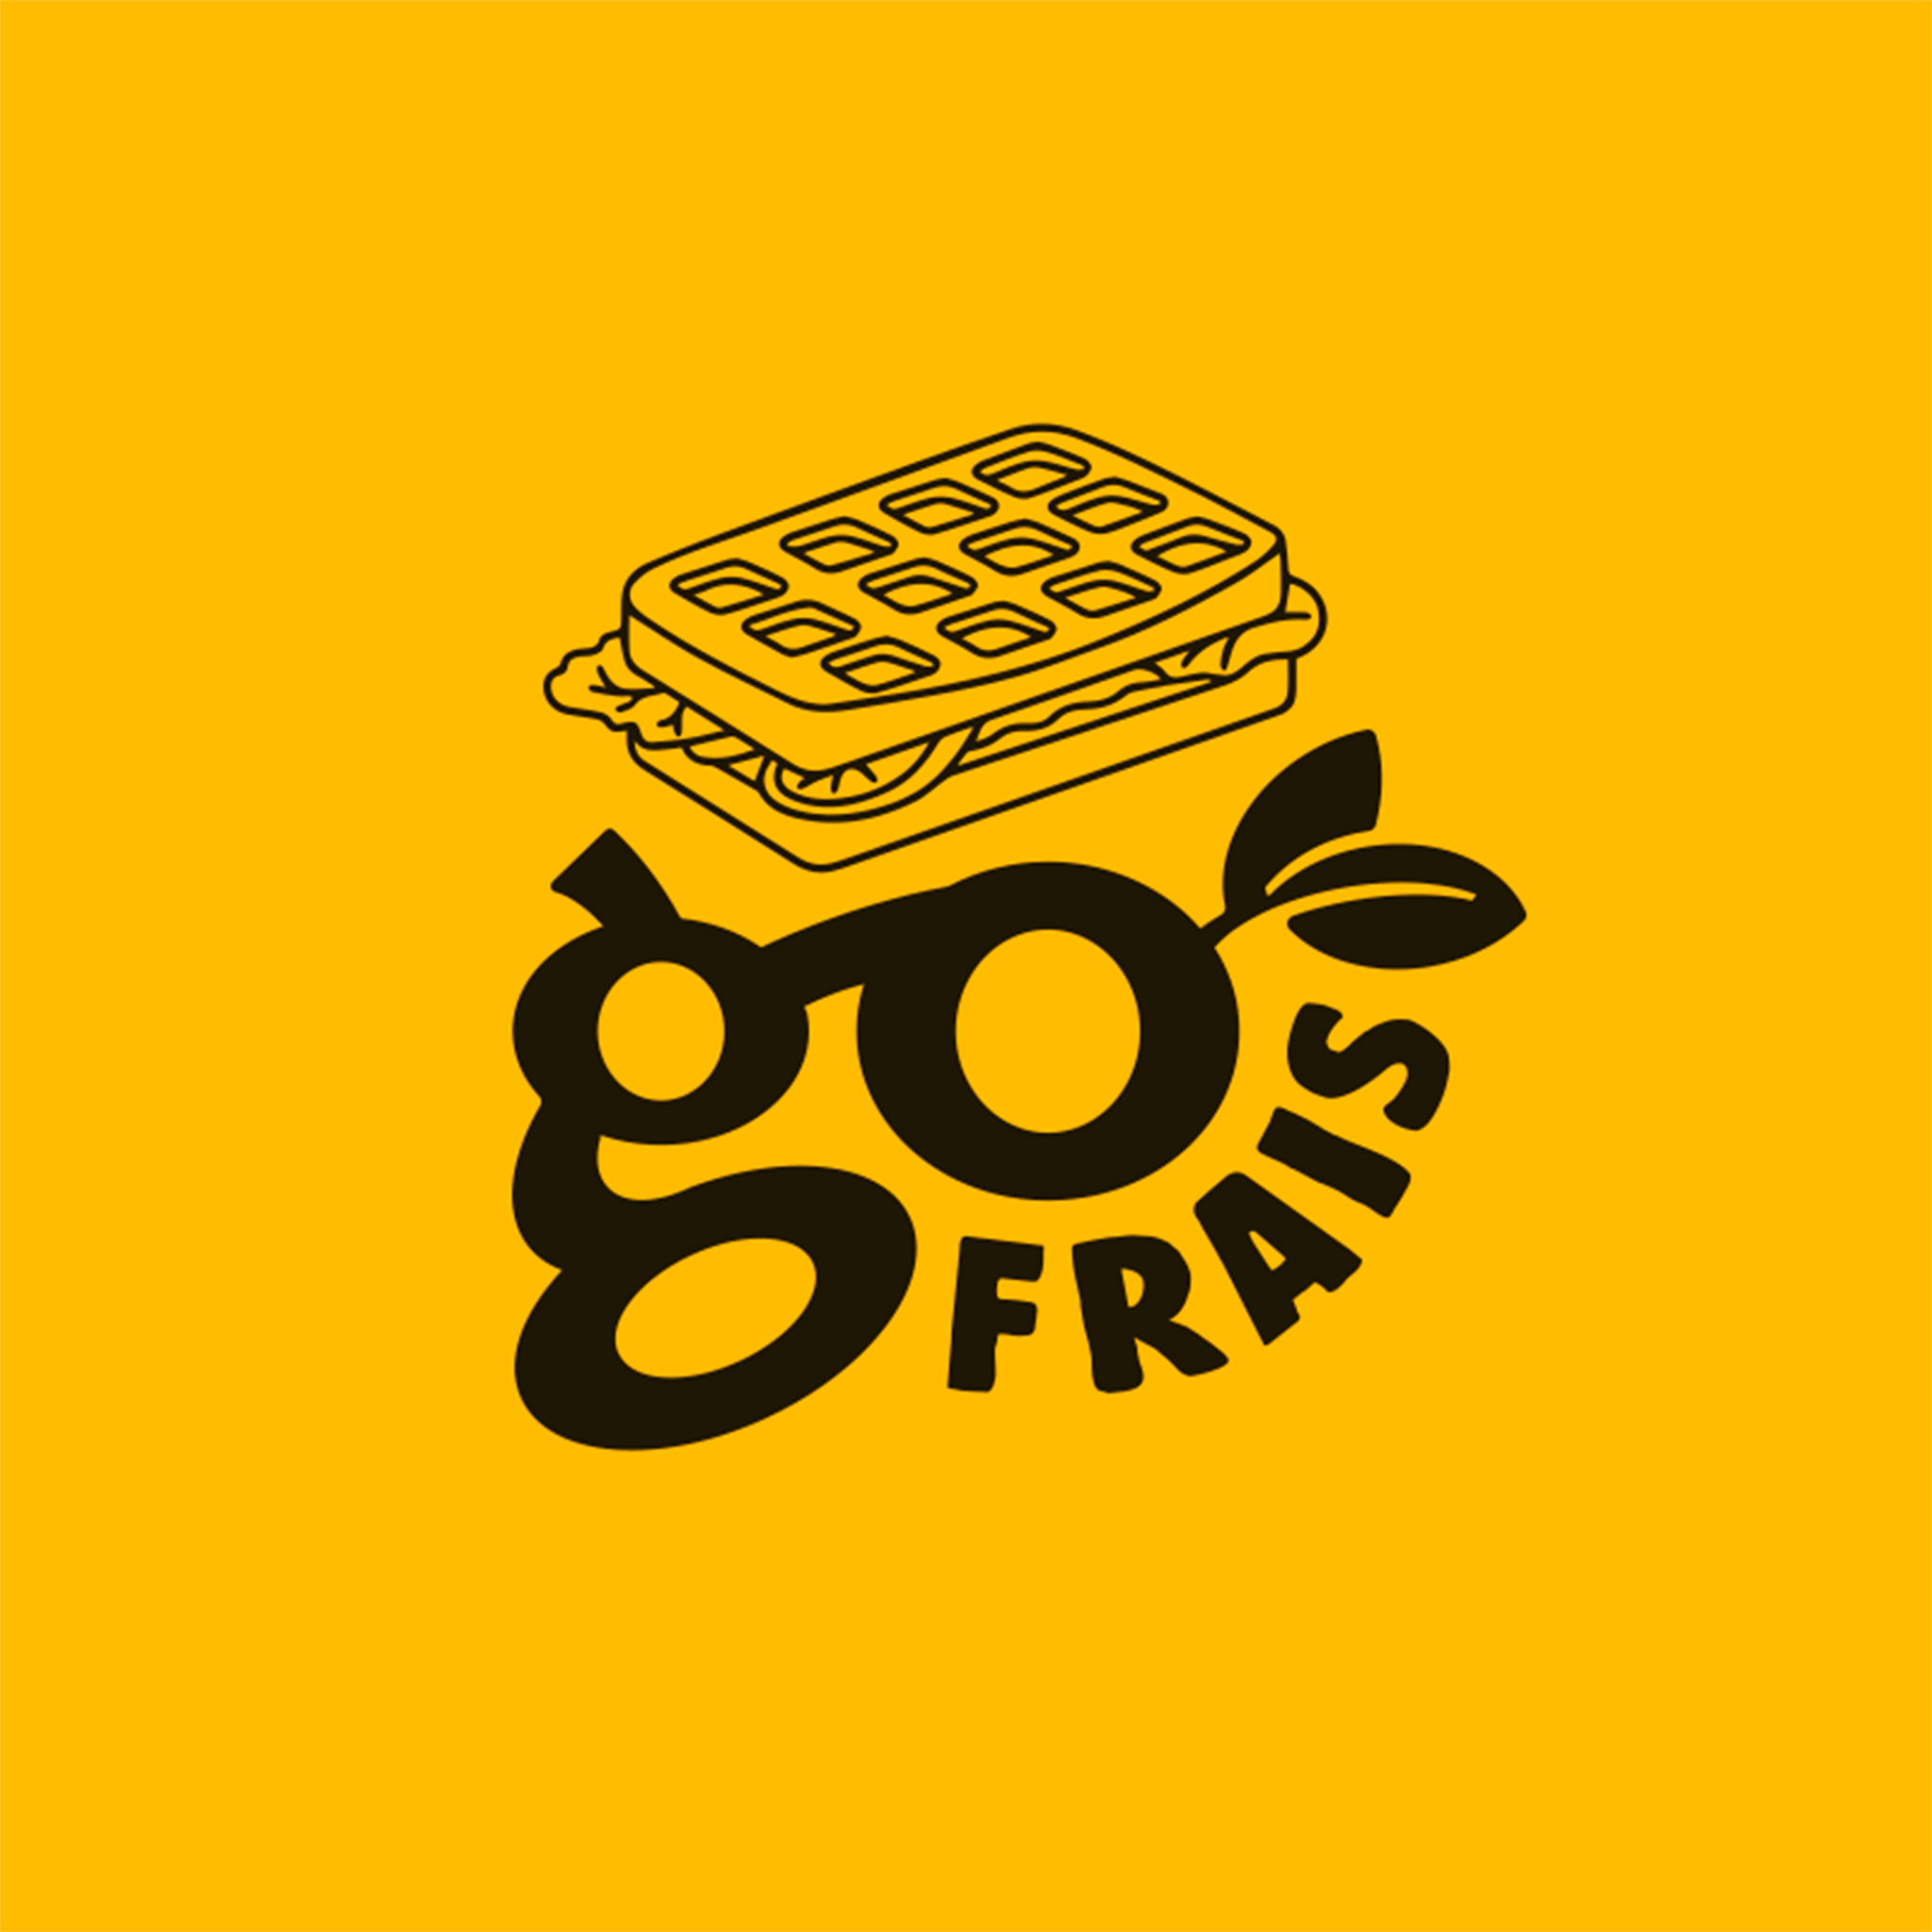 autograff-design-graphique-graphiste-toulouse-france-logo-go-frais-street-food-jaune